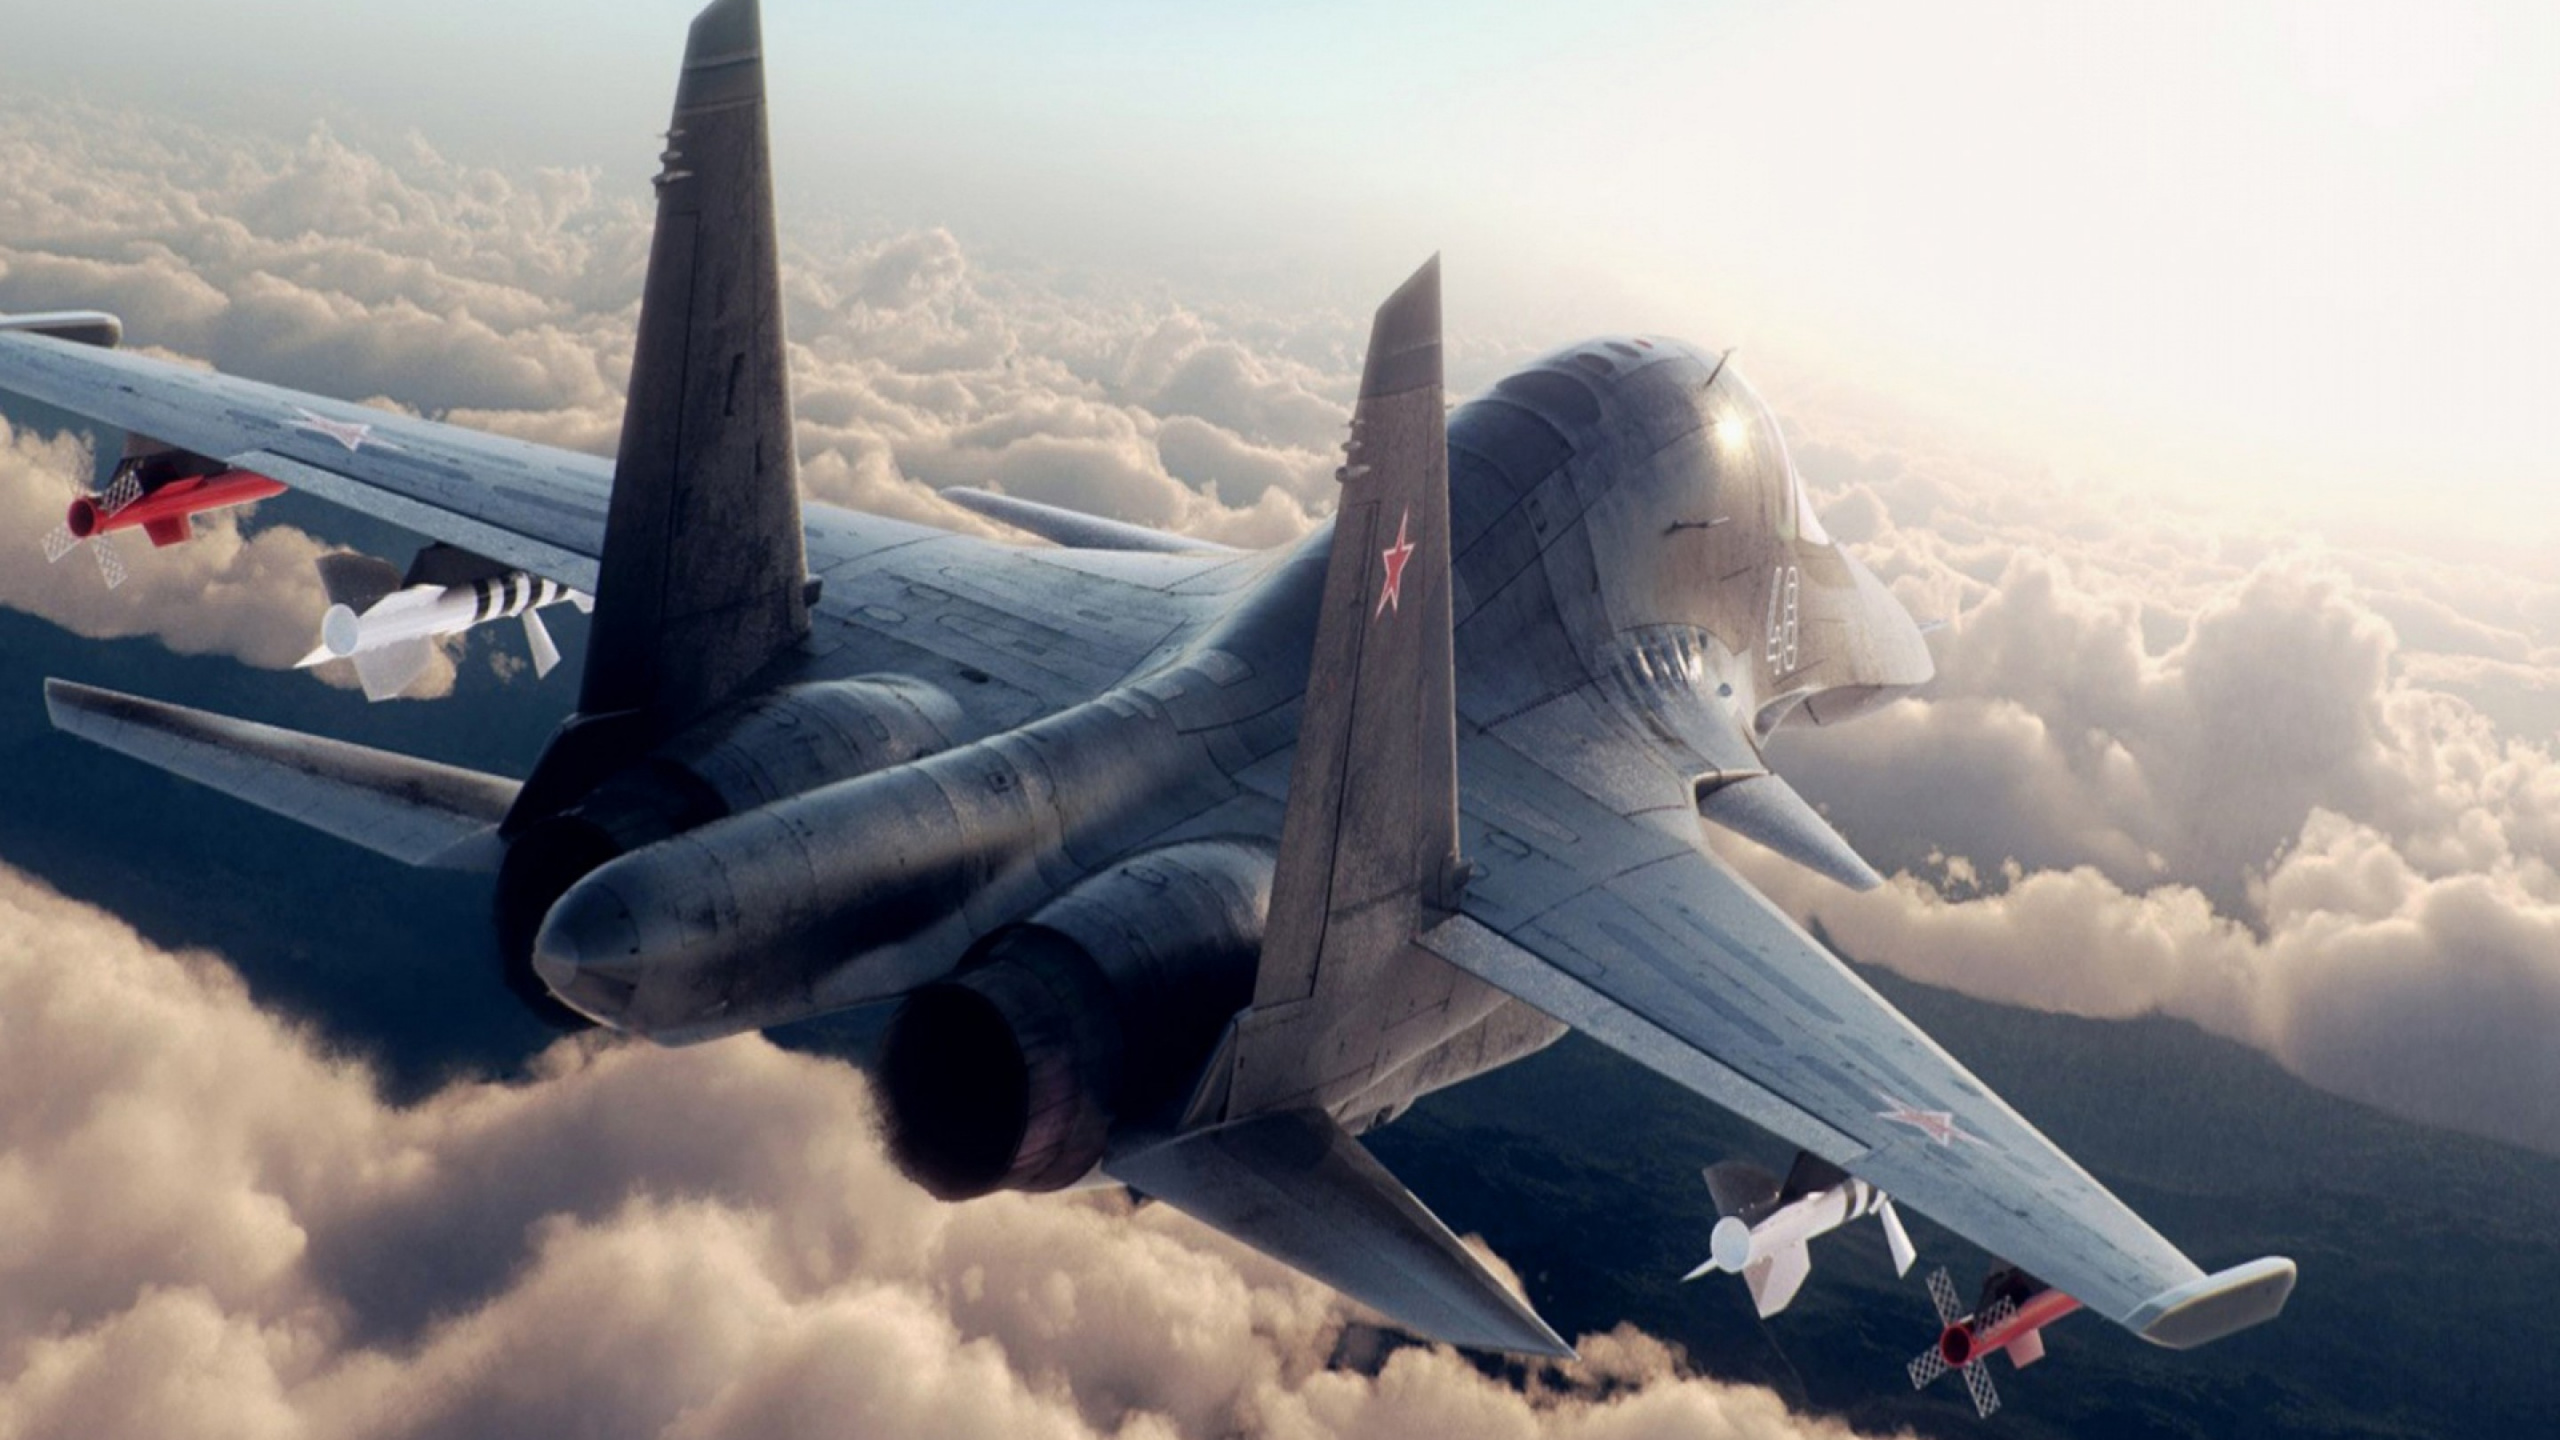 Grauer Kampfjet, Der Tagsüber Über Weiße Wolken Fliegt. Wallpaper in 2560x1440 Resolution